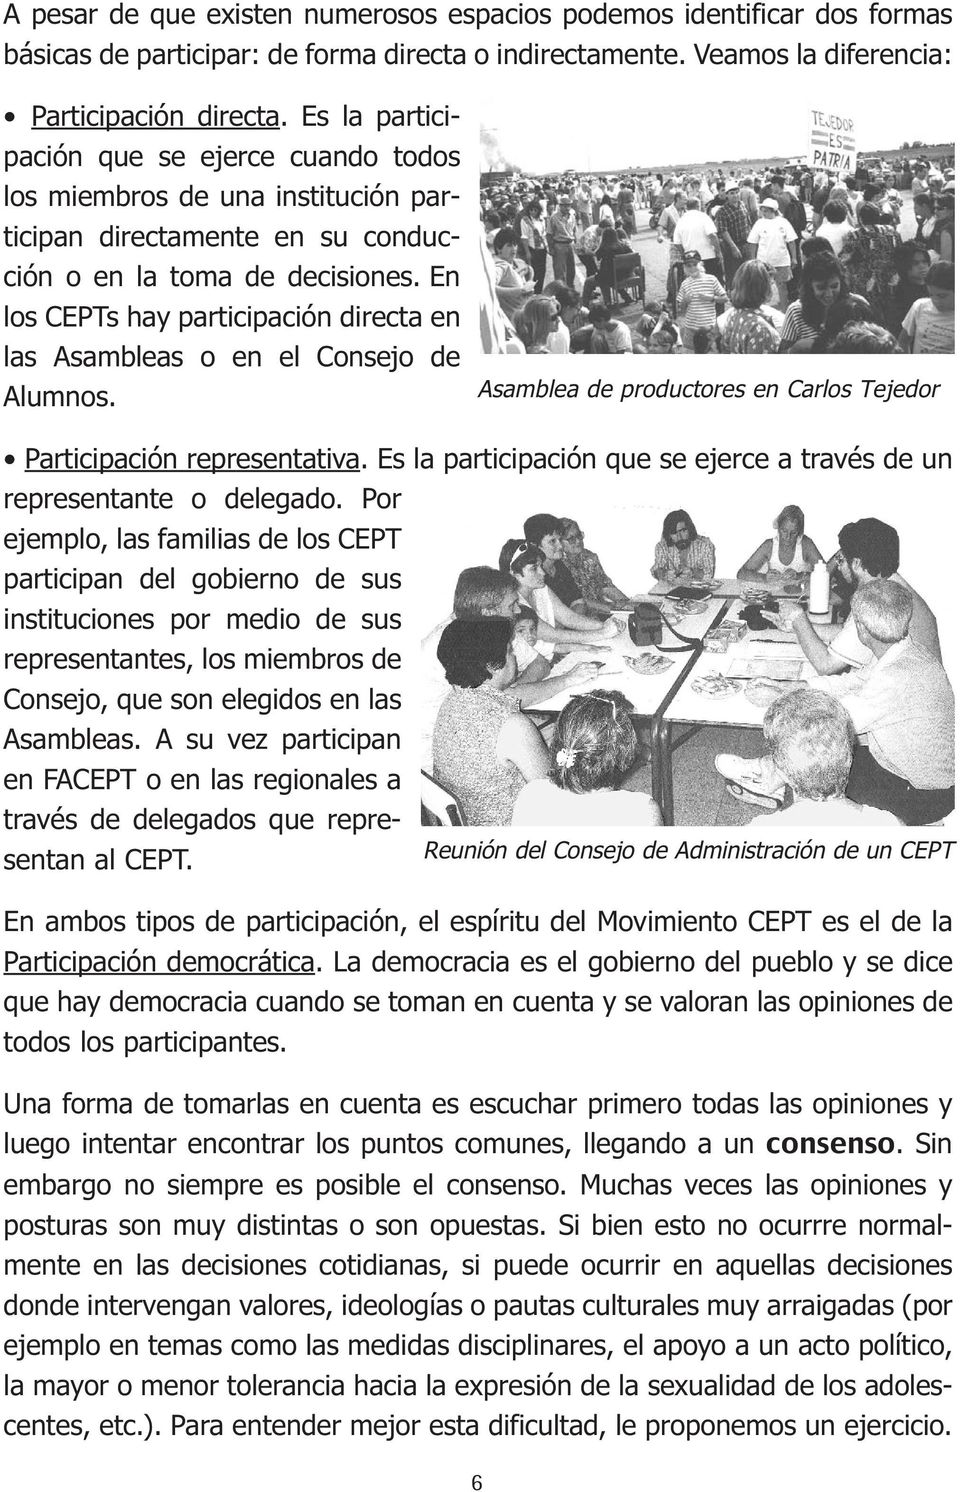 En los CEPTs hay participación directa en las Asambleas o en el Consejo de Alumnos. Asamblea de productores en Carlos Tejedor Participación representativa.